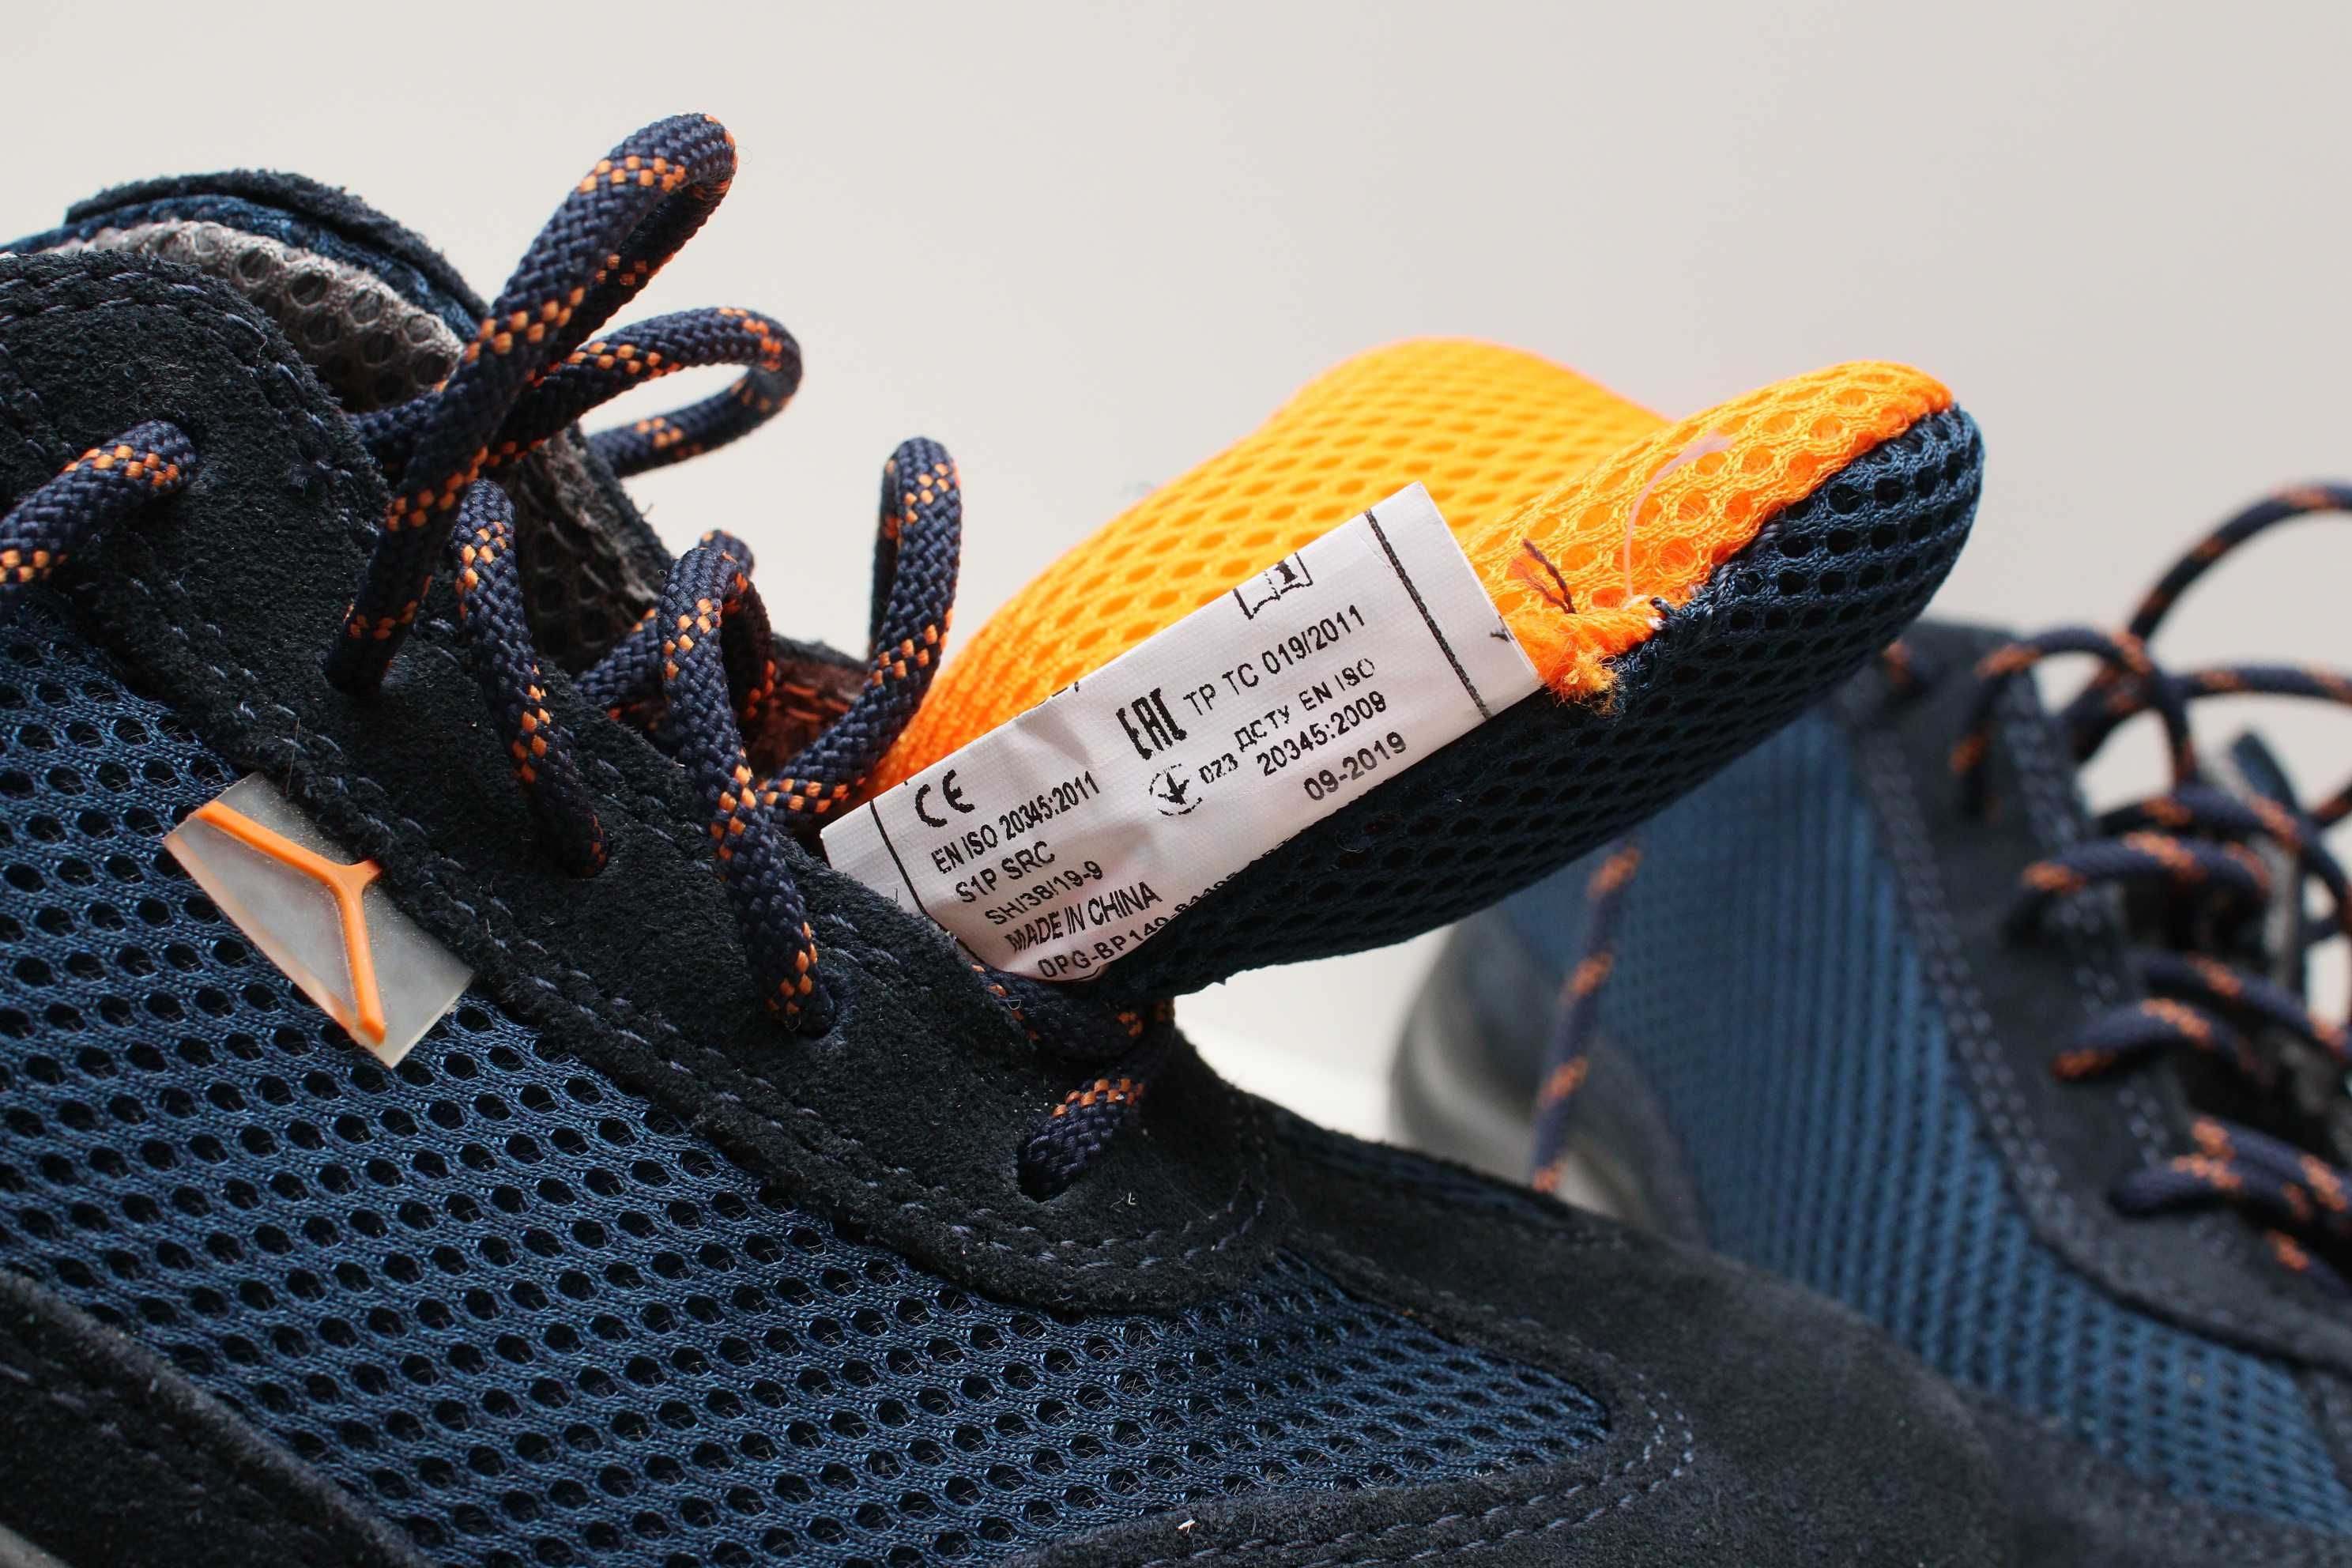 Робоче взуття черевики кросівки DeltaPlus 40р 264мм устілка мет.нос.